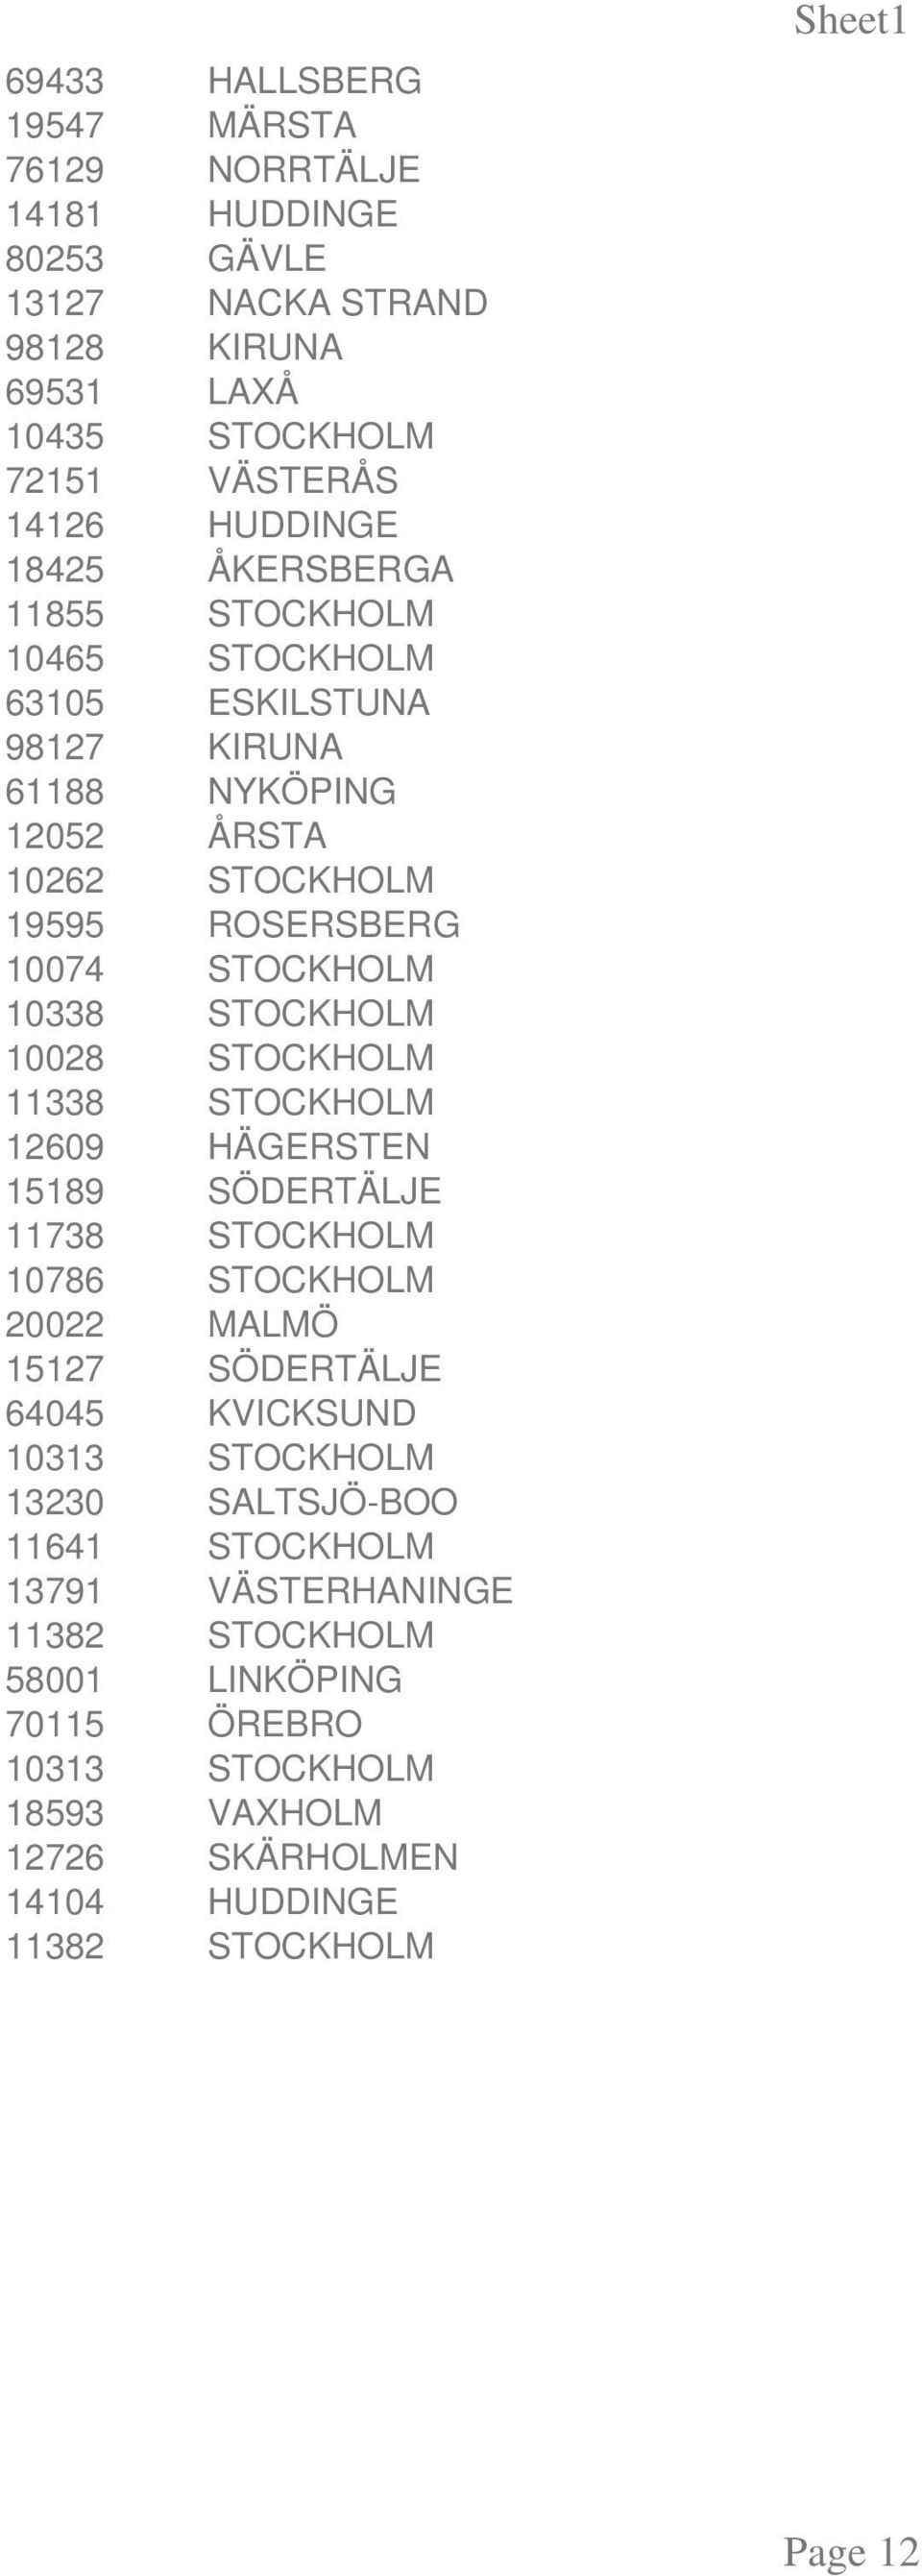 STOCKHOLM 11338 STOCKHOLM 12609 HÄGERSTEN 15189 SÖDERTÄLJE 11738 STOCKHOLM 10786 STOCKHOLM 20022 MALMÖ 15127 SÖDERTÄLJE 64045 KVICKSUND 10313 STOCKHOLM 13230 SALTSJÖ-BOO